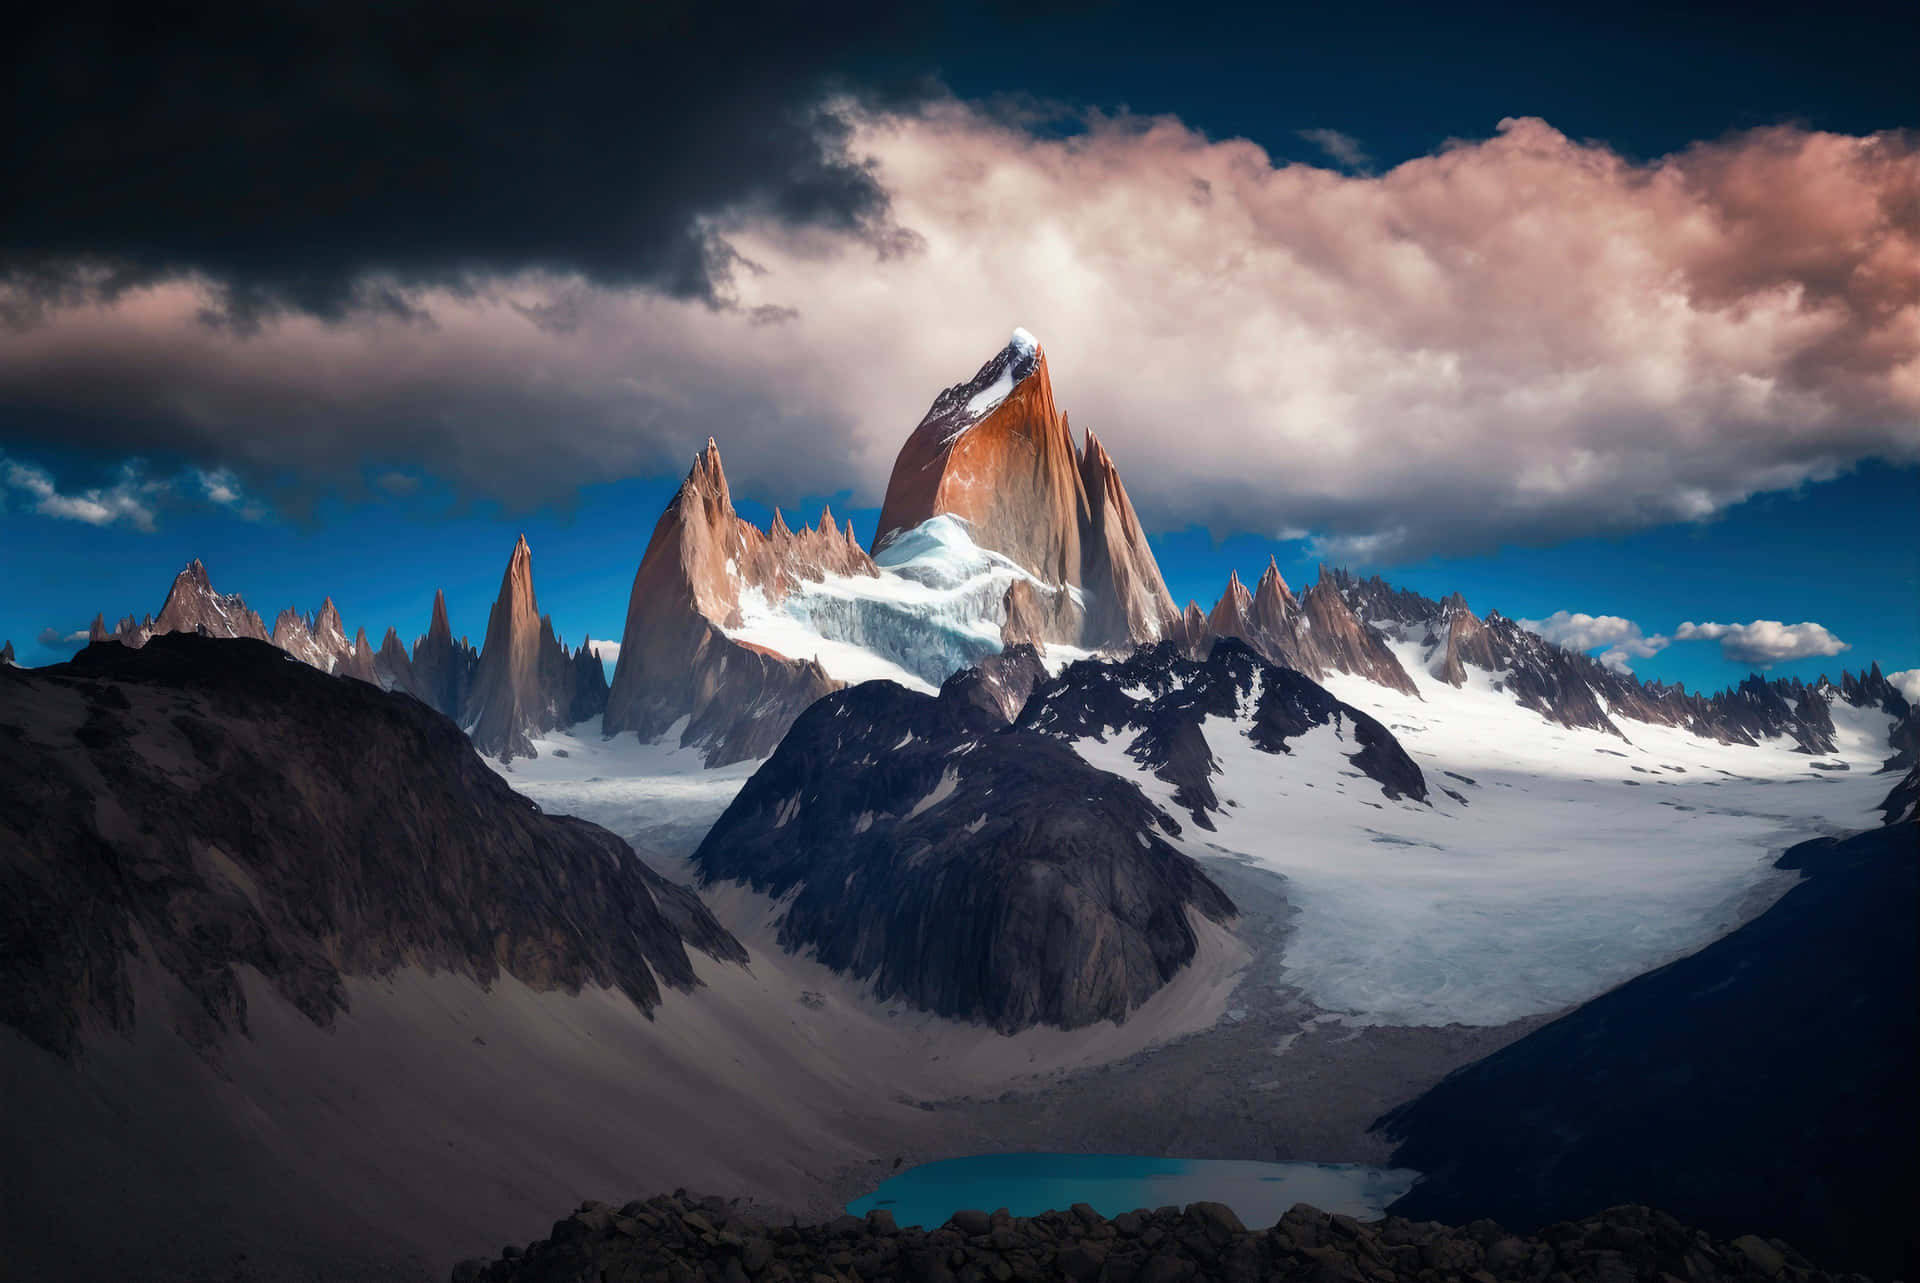 Nydren Natur Med Et Besøg I Patagonien.